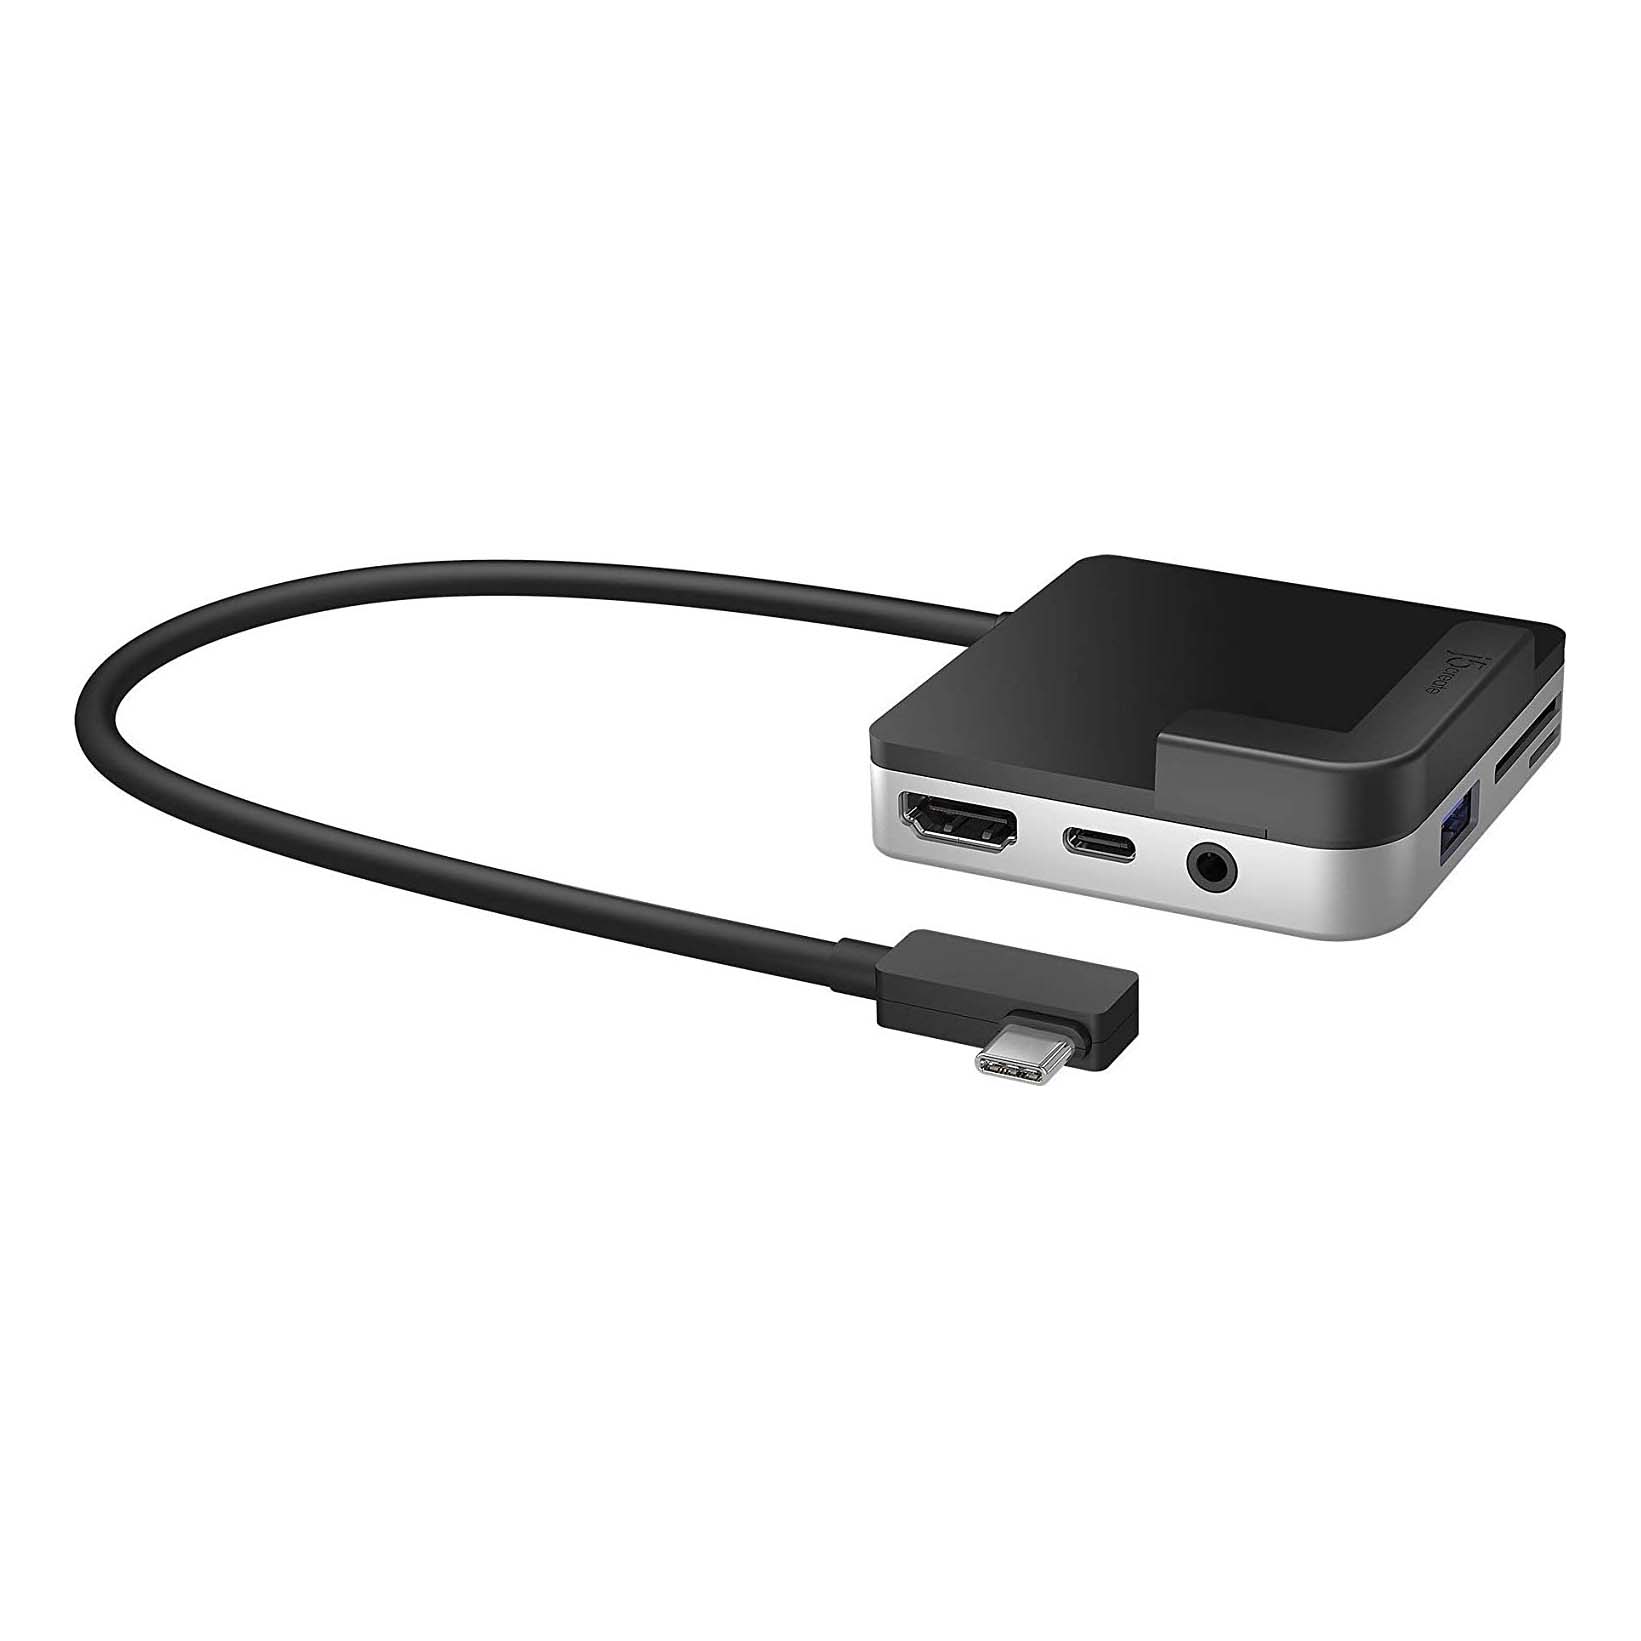 Док-станция j5create Travel Dock USB-C для iPad Pro, черный/серебро док станция j5create ultradrive mini dock для microsoft surface pro 7 jcd324s blk черный